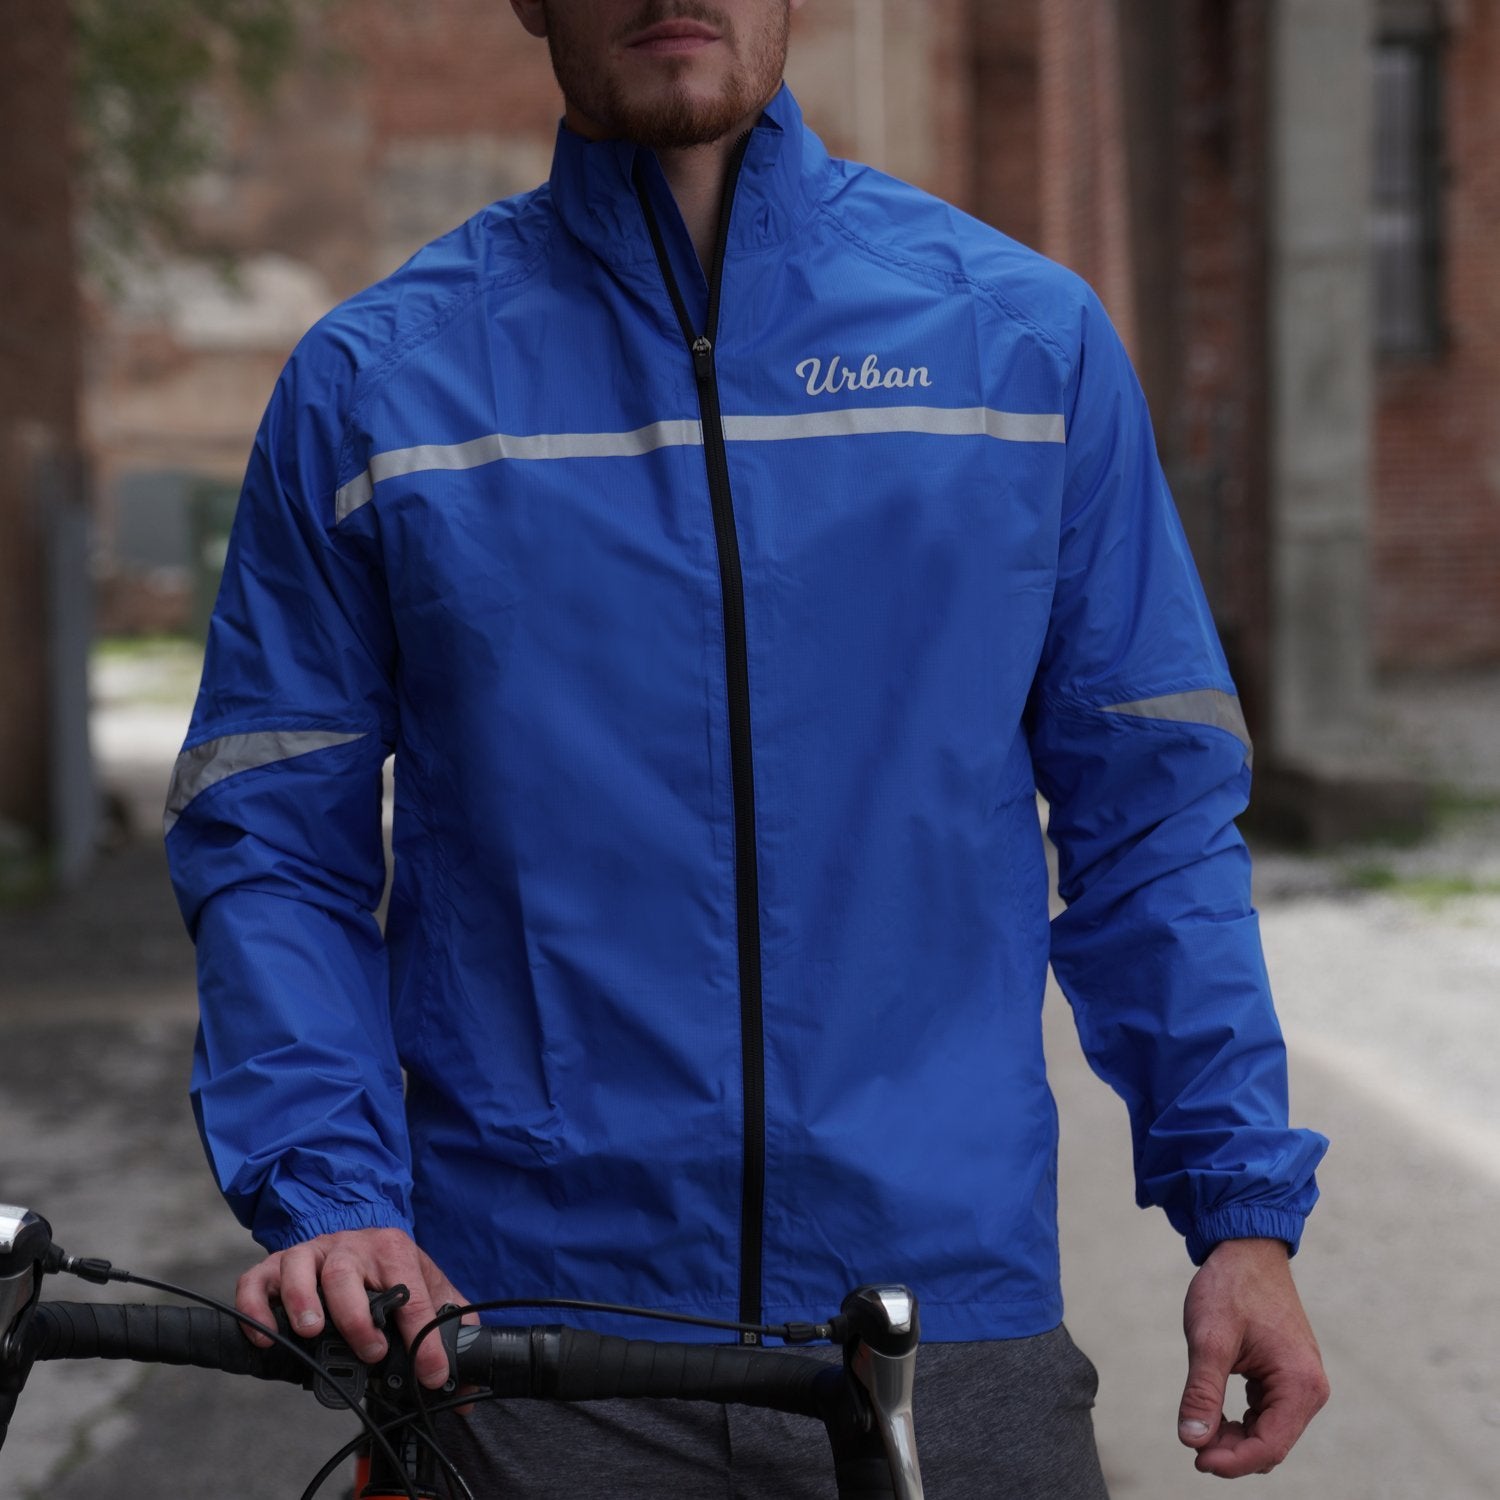 Urban Windproof & Waterproof Commuters Cycling Jacket - Blue